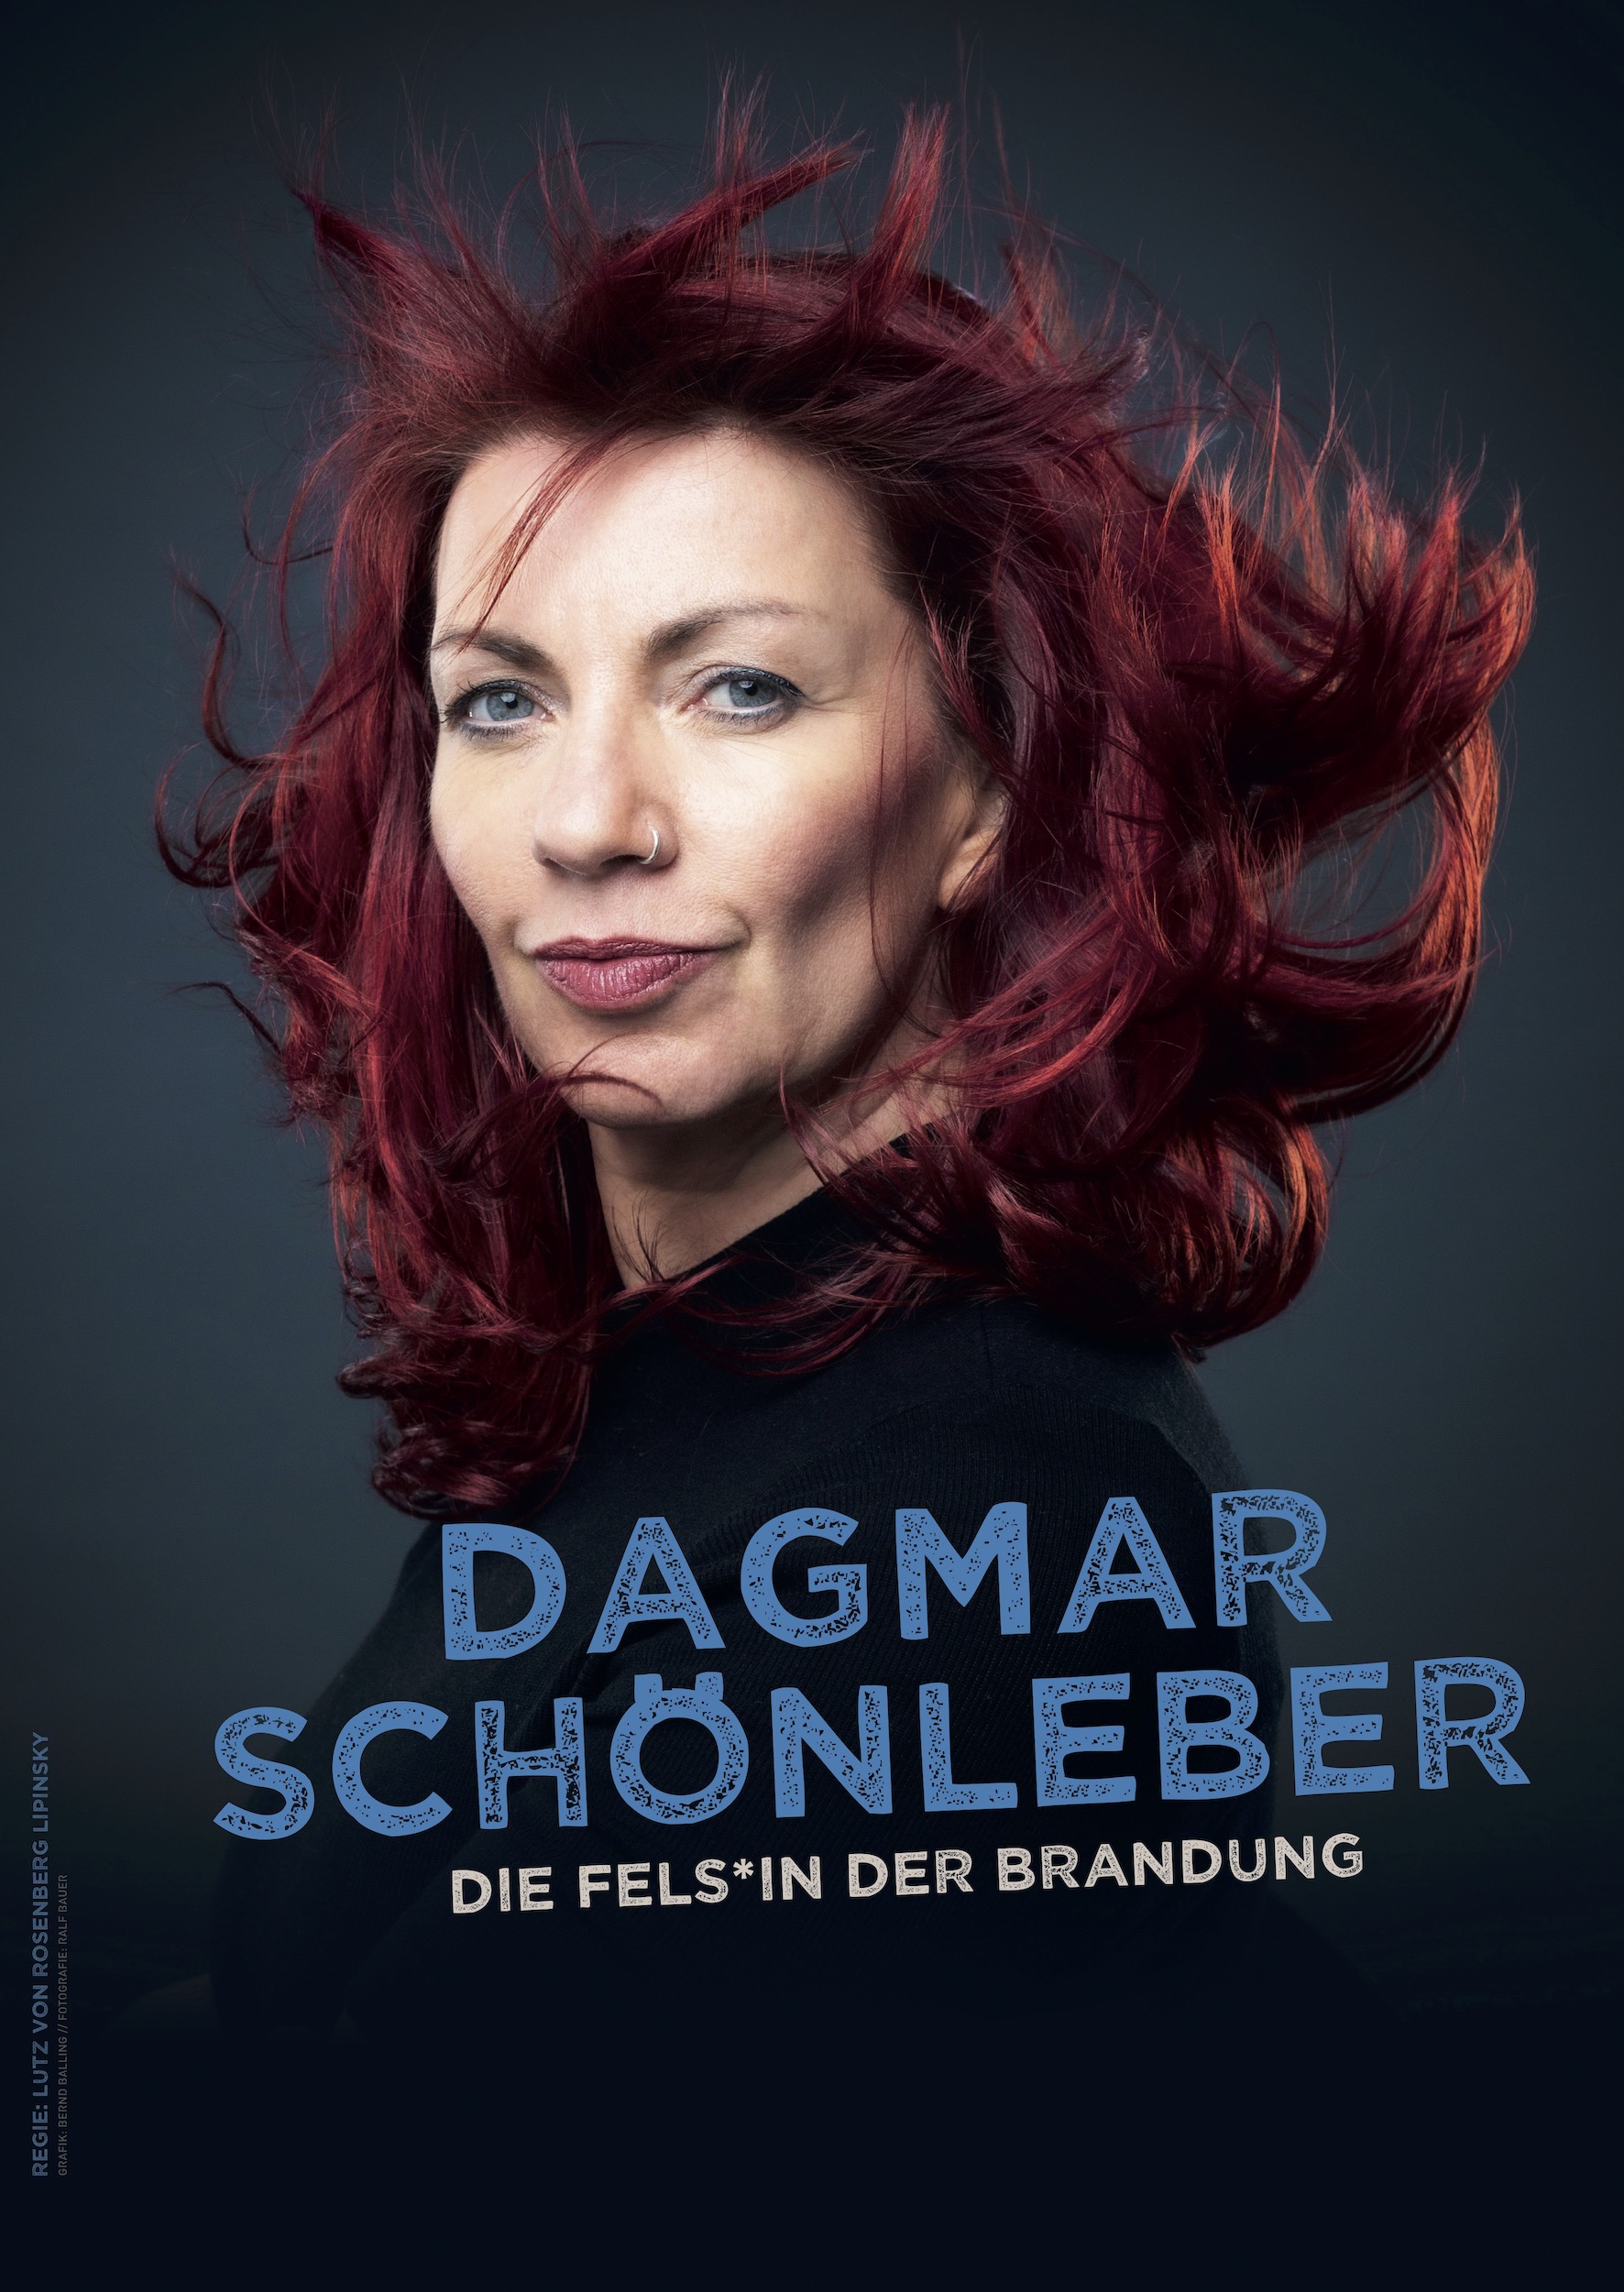 Dagmar Schönleber | Fels*in der Brandung